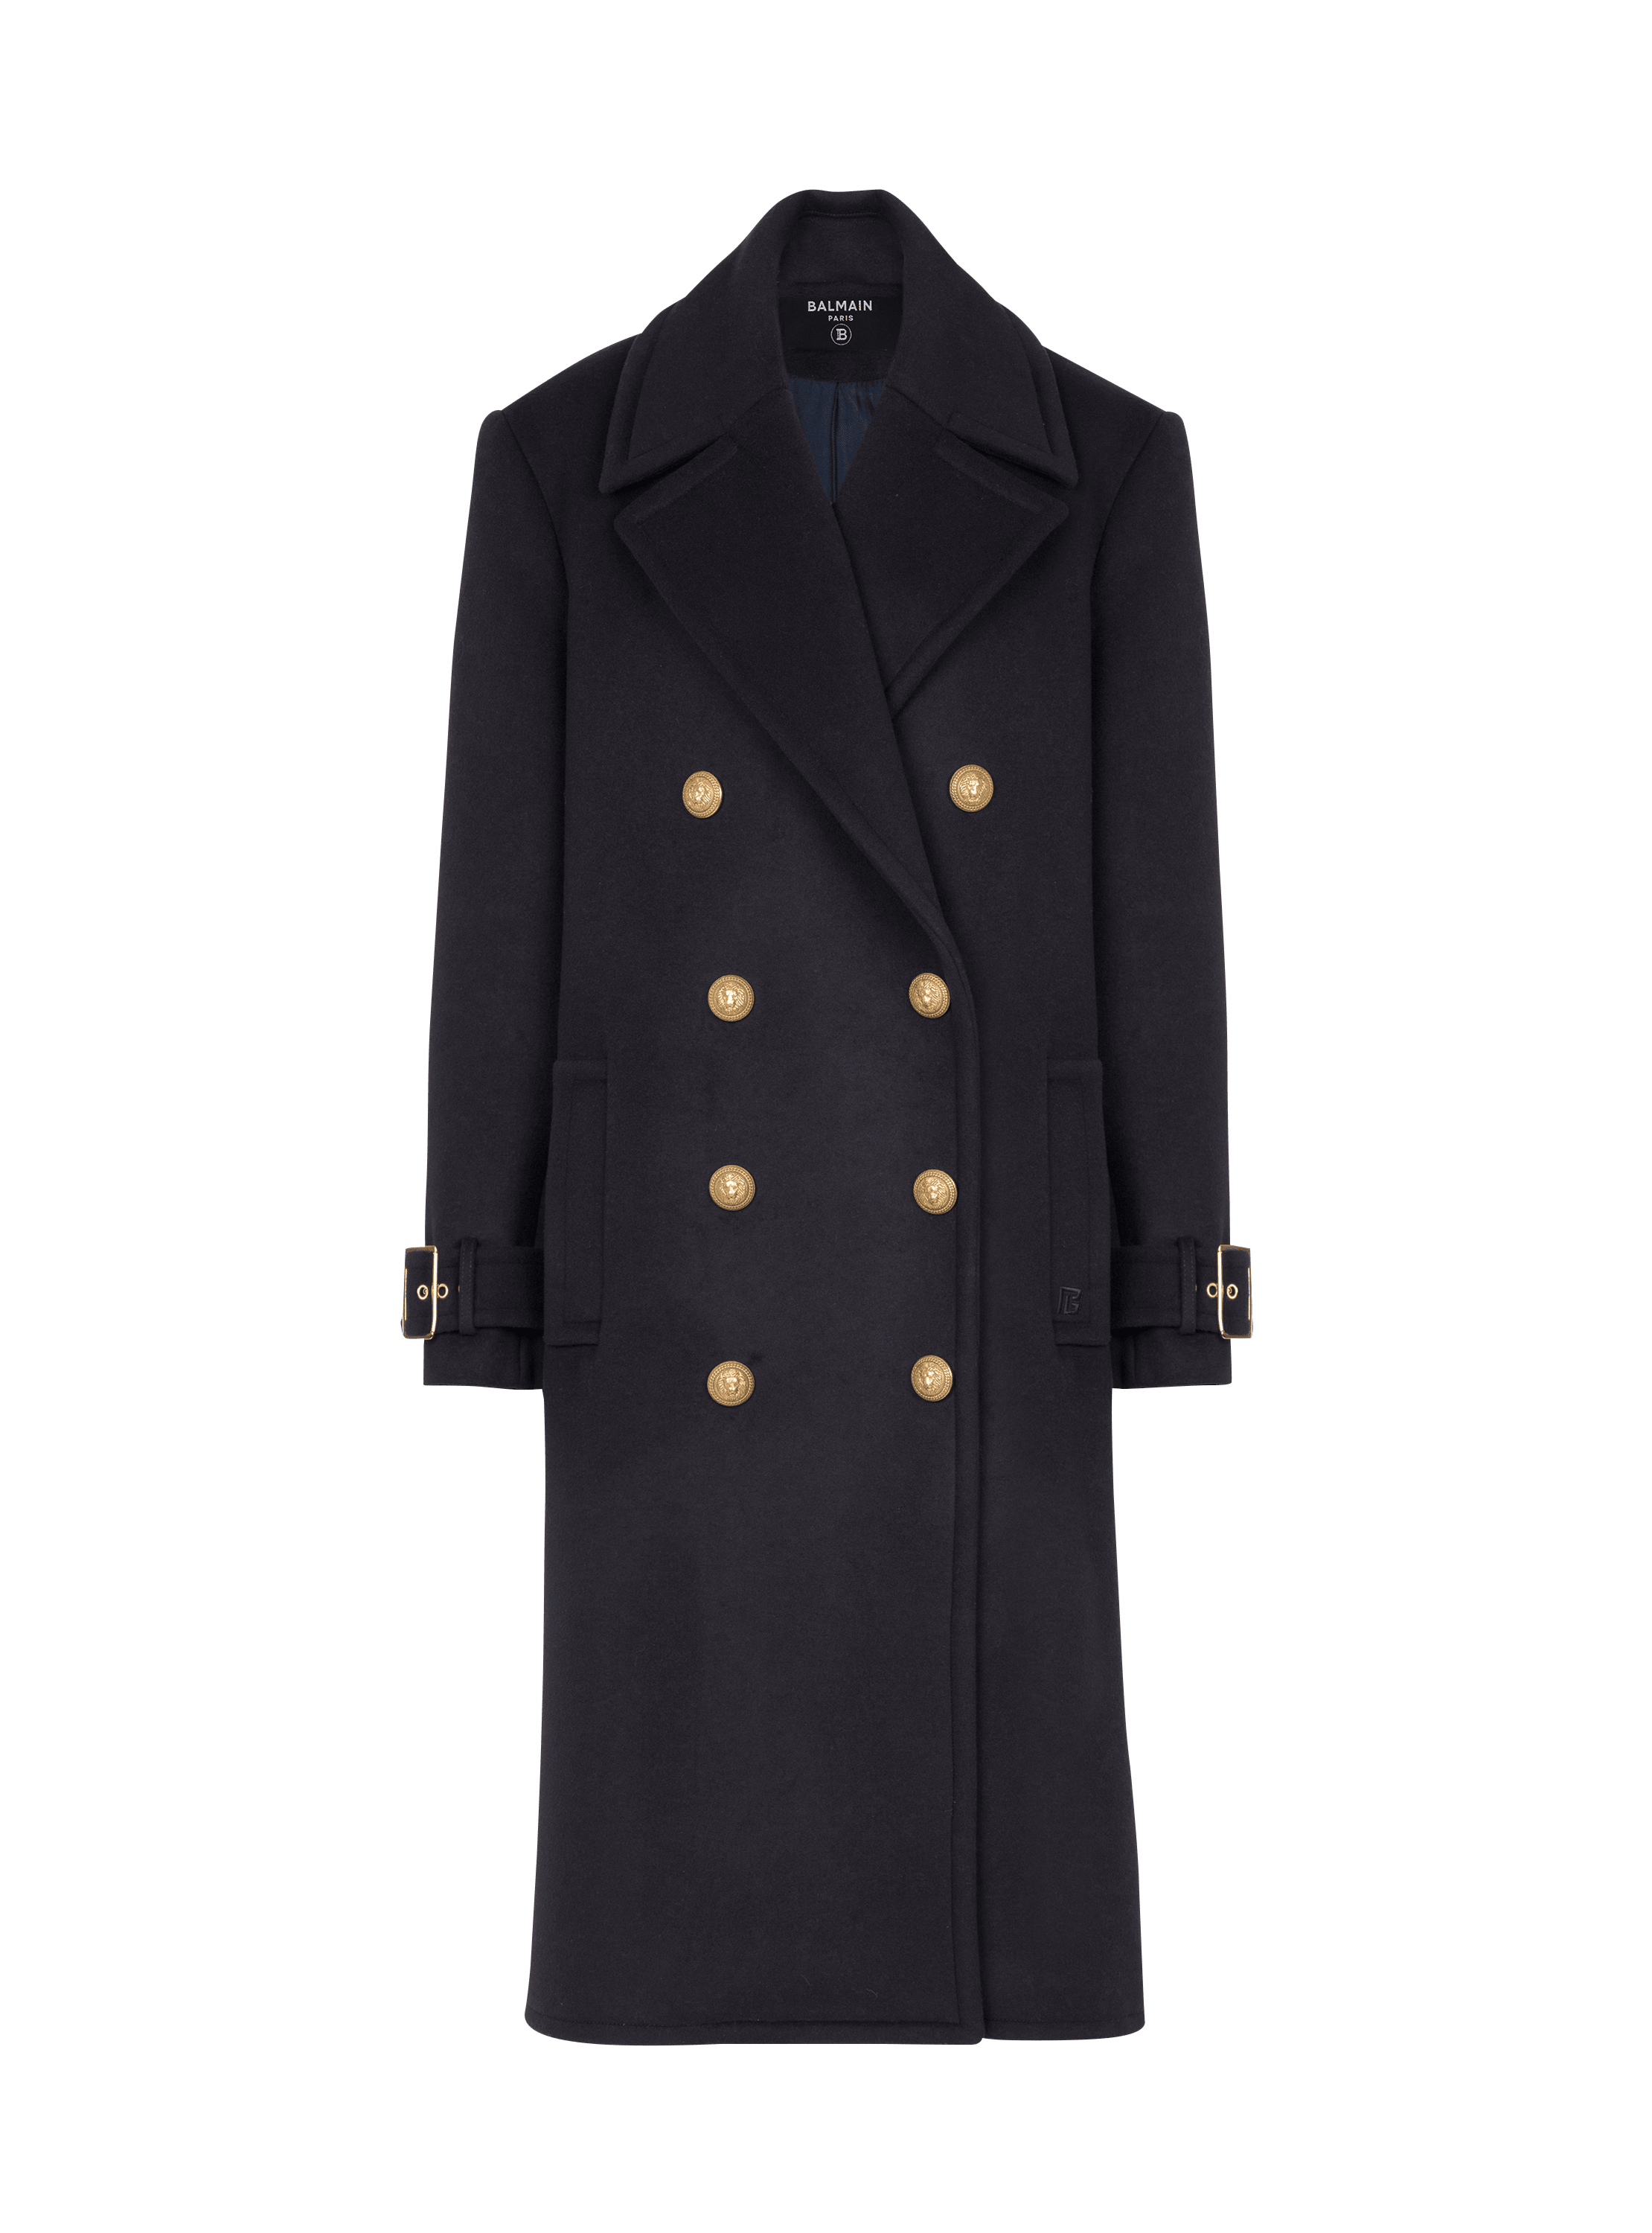 Manteau oversize à boutonnage croisé, bleu marine, hi-res